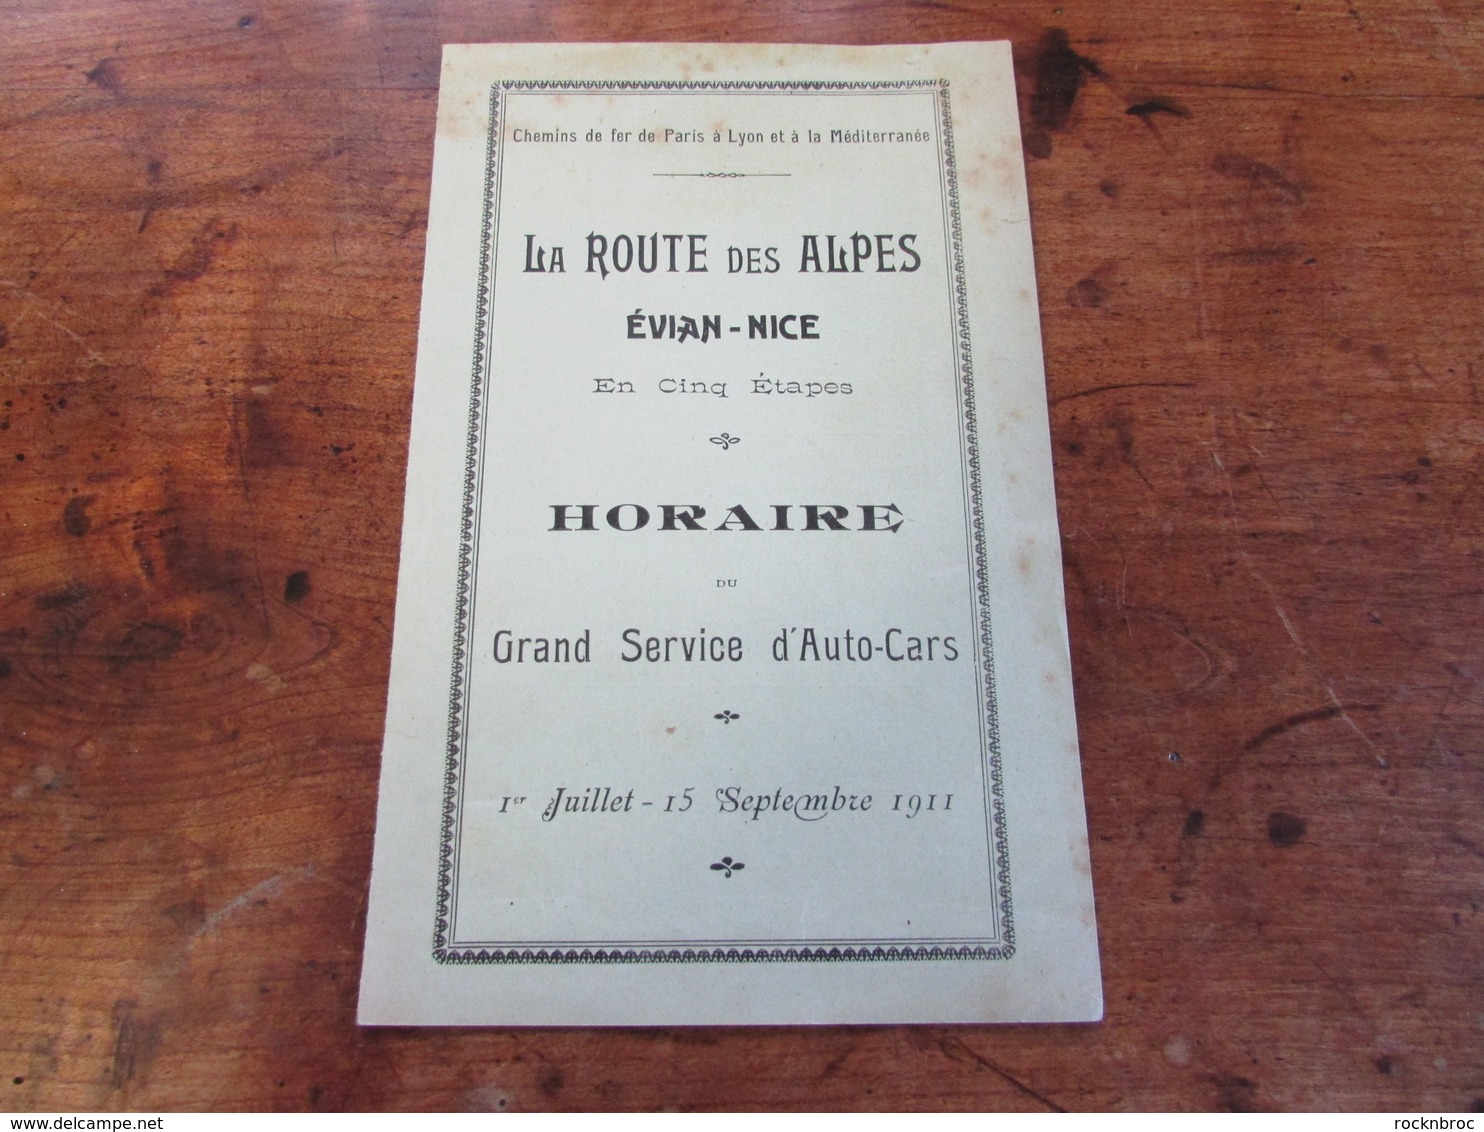 La Route Des Alpes Evian-Nice - Horaire Du Grand Service D'Auto-Cars - PLM - 1911 - Europe